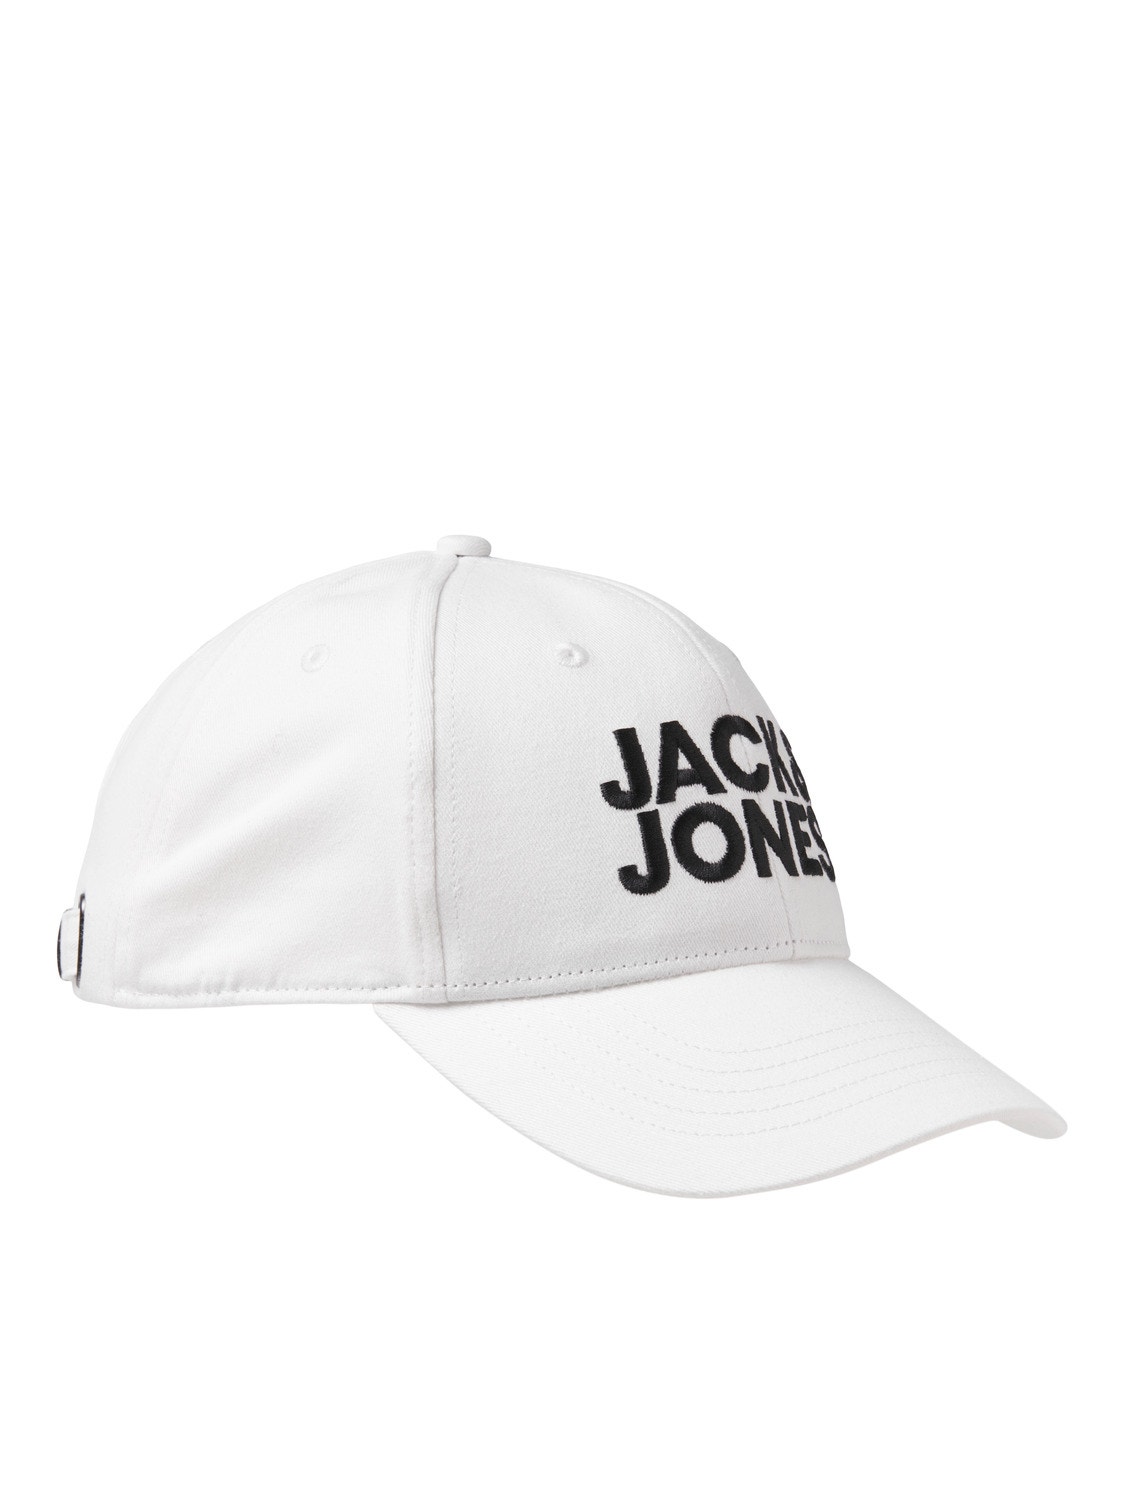 Jack & Jones Baseball cap -White - 12254296